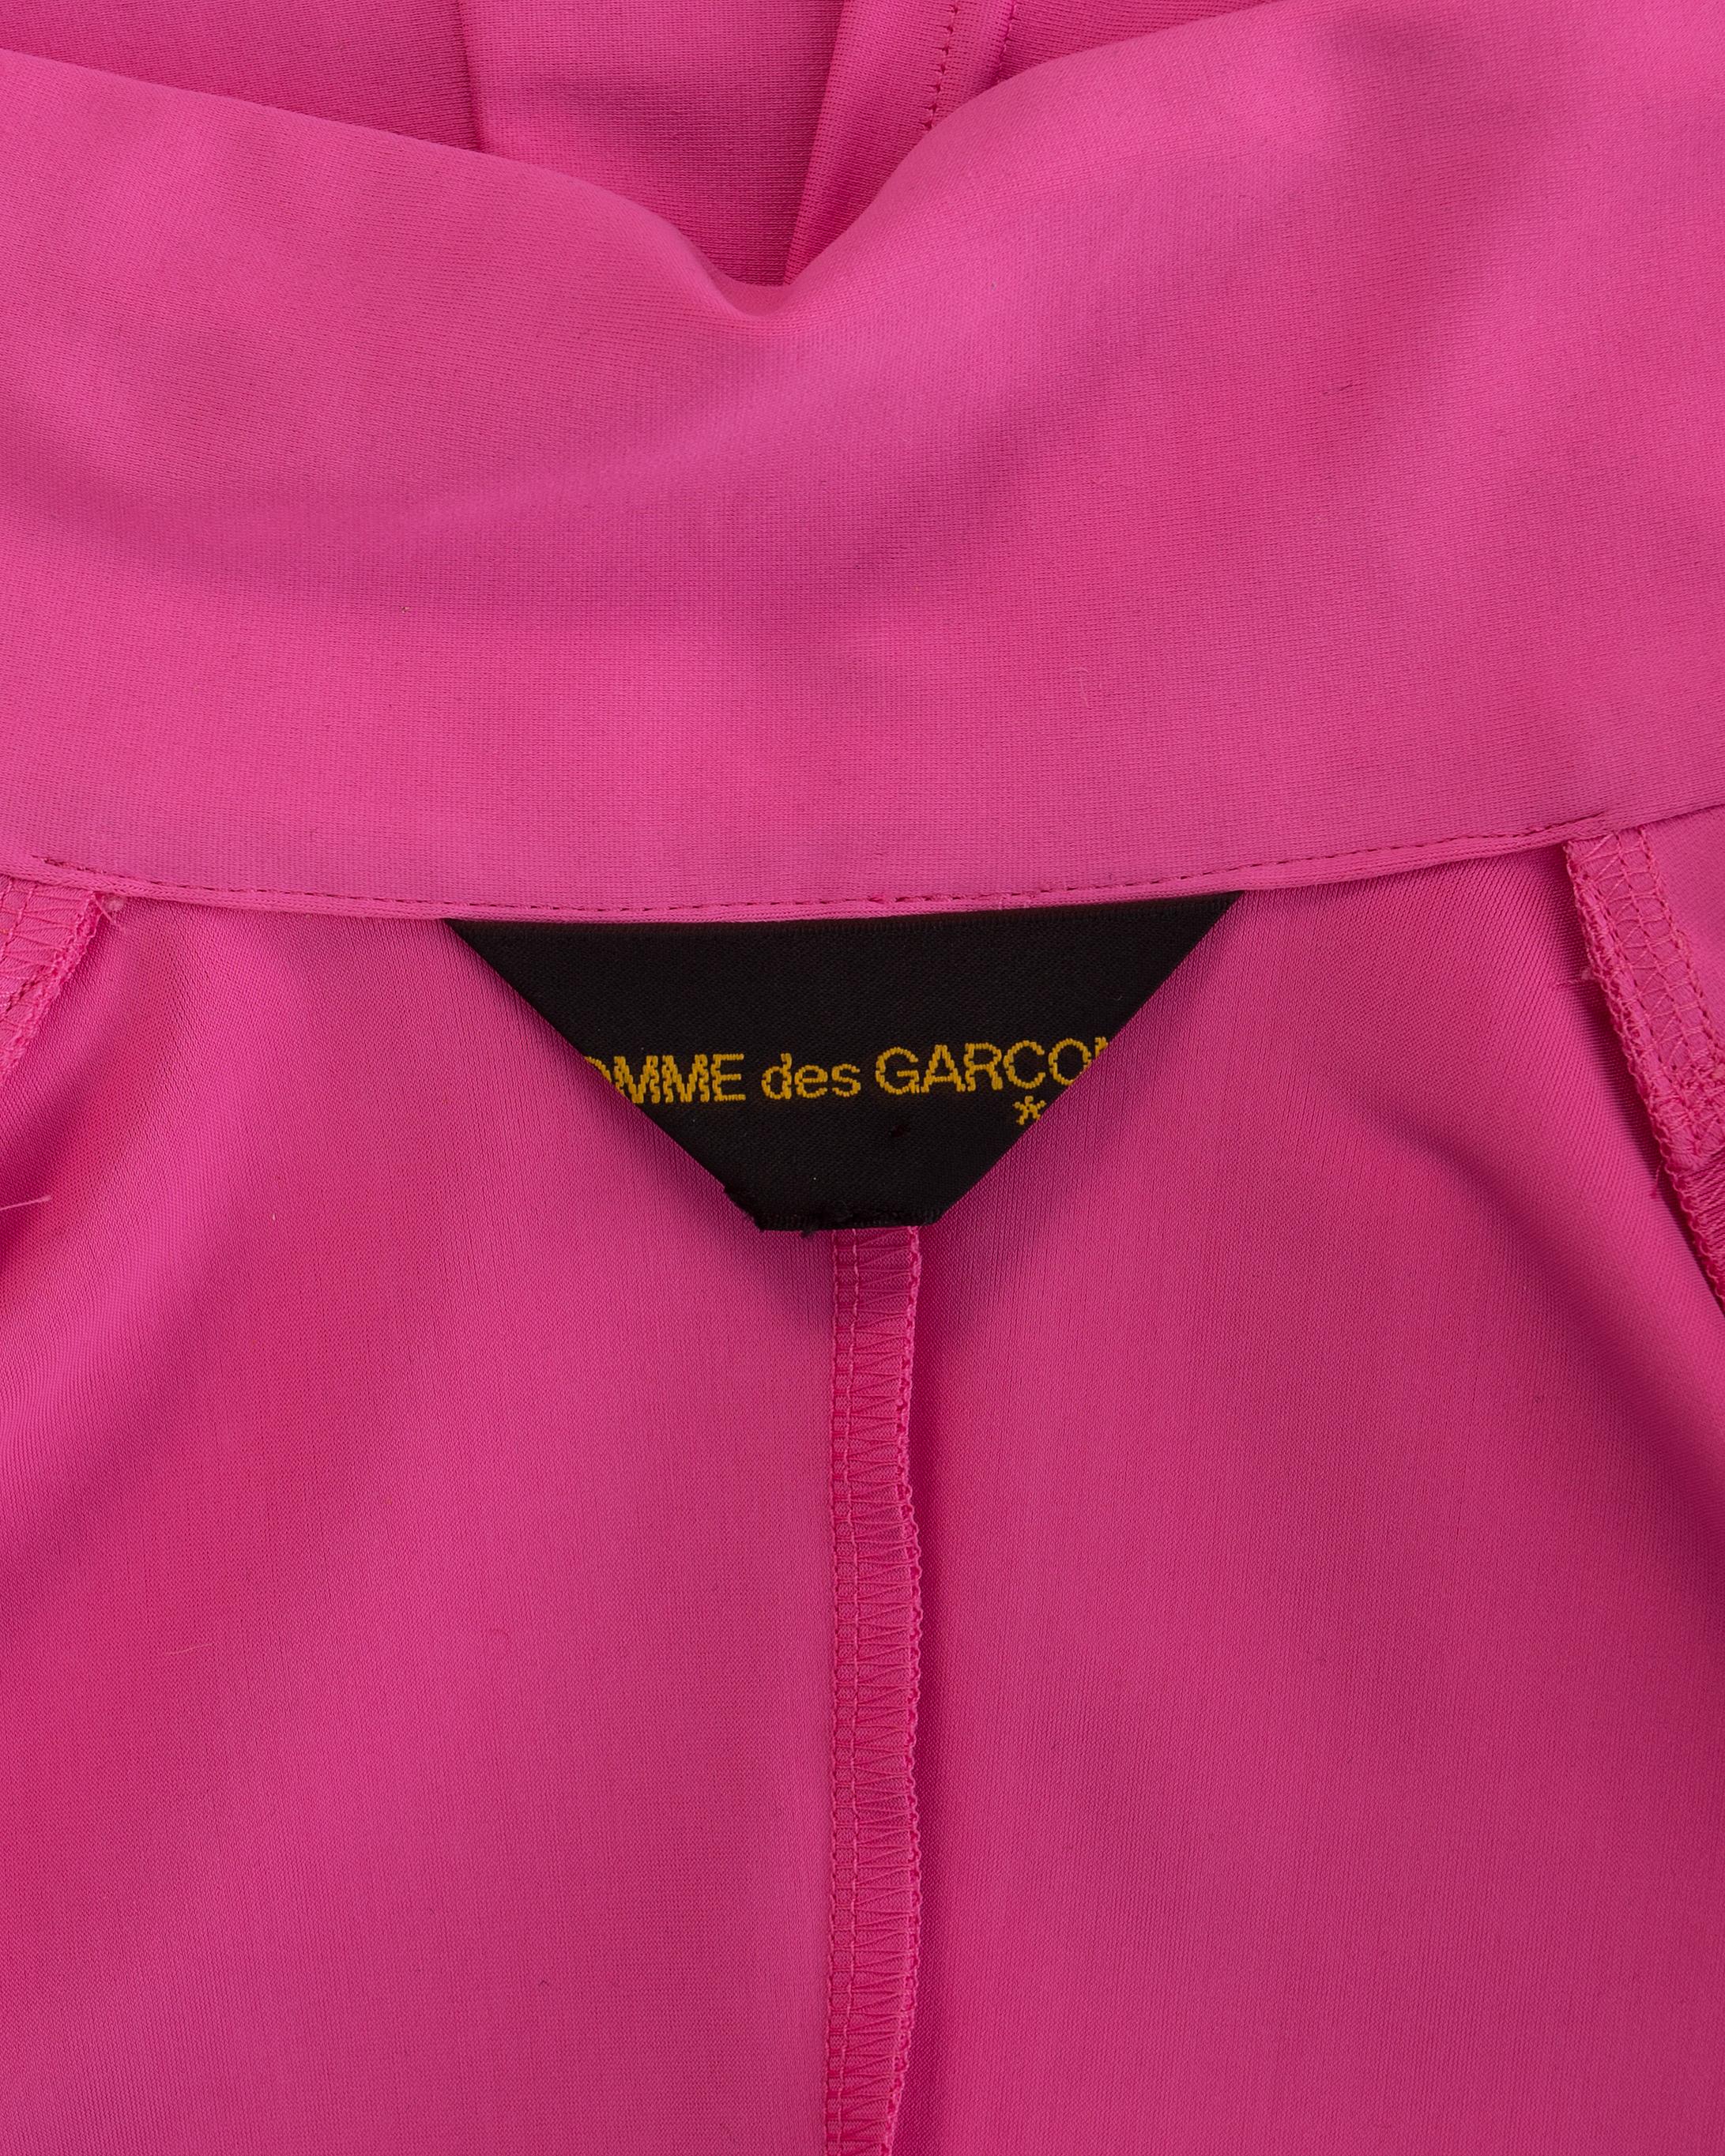 Comme des Garcons hot pink and black lycra jacket and harem pants set, fw 2007 1